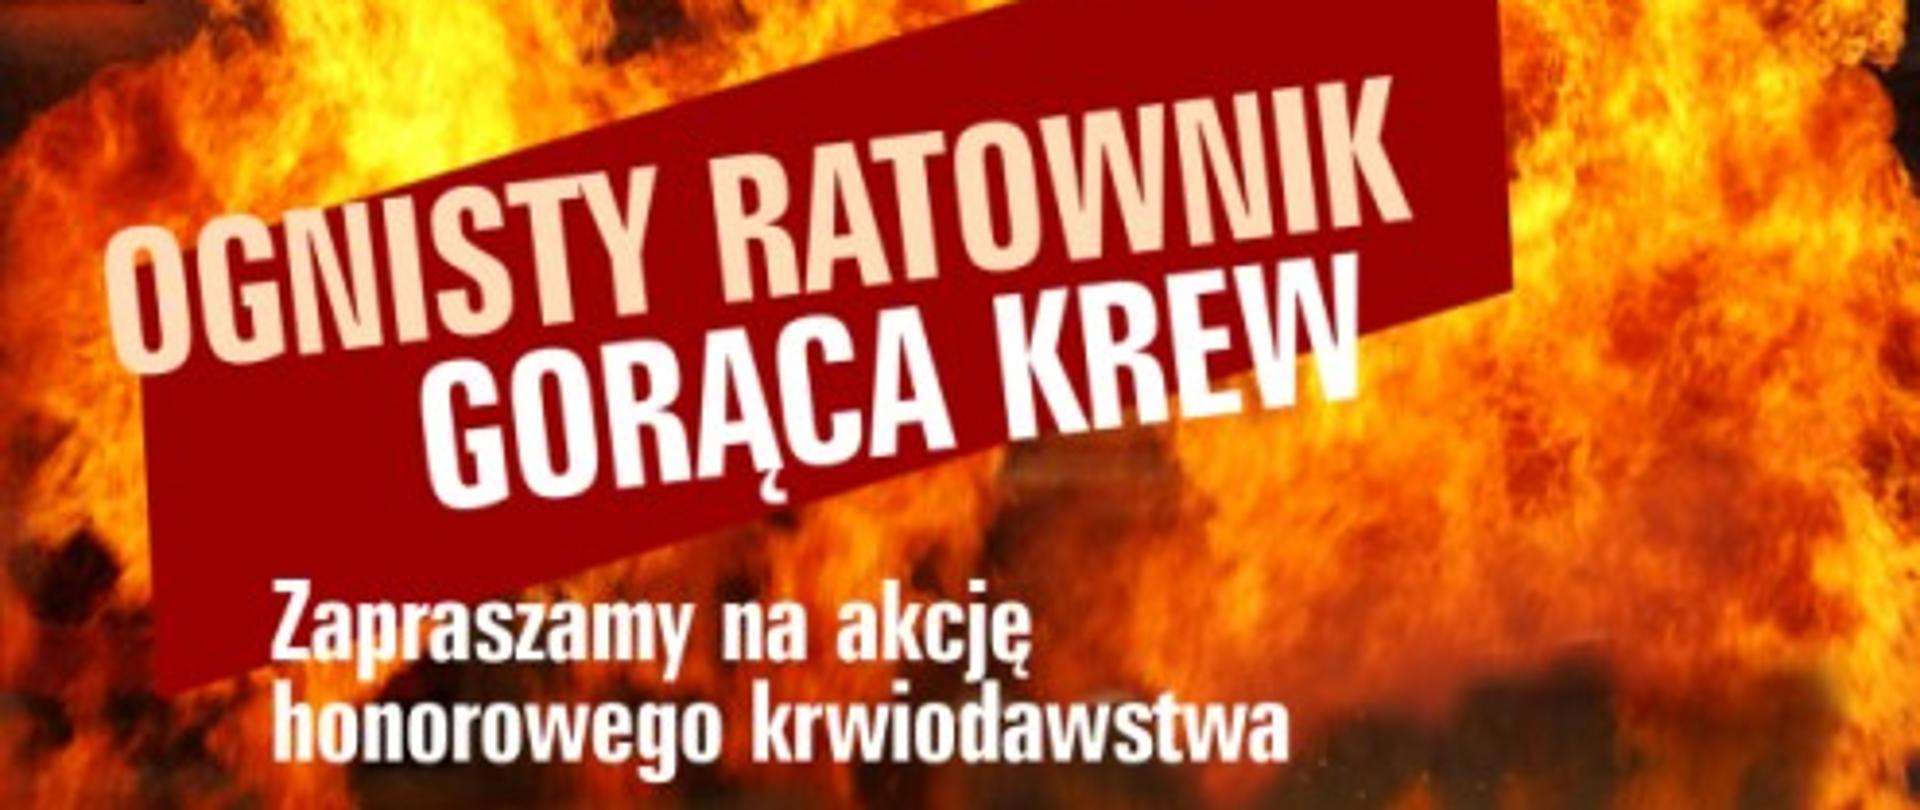 Logo akcji - Ognisty Ratownik - Gorąca Krew.